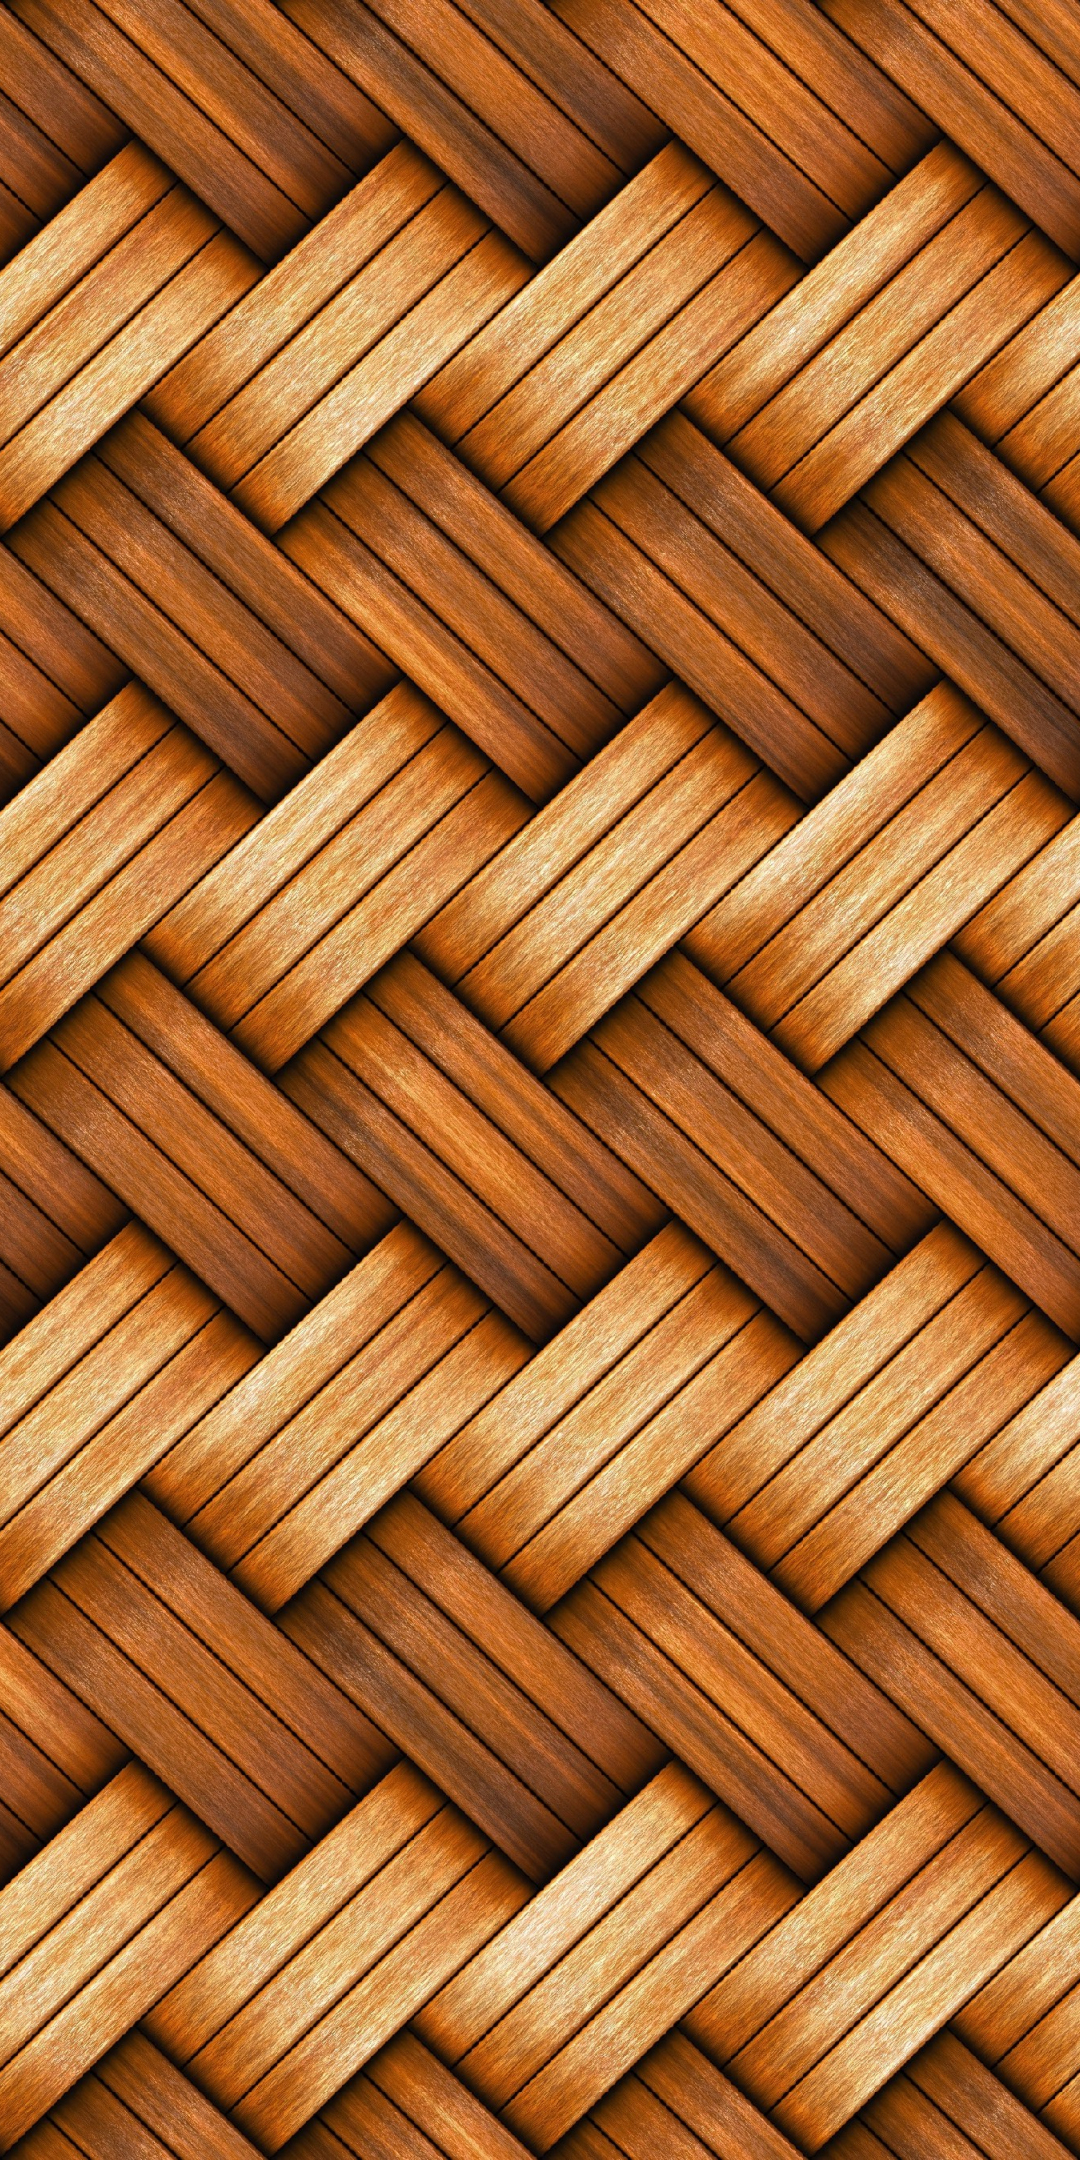 Basket, fiber, texture, pattern, 1080x2160 wallpaper